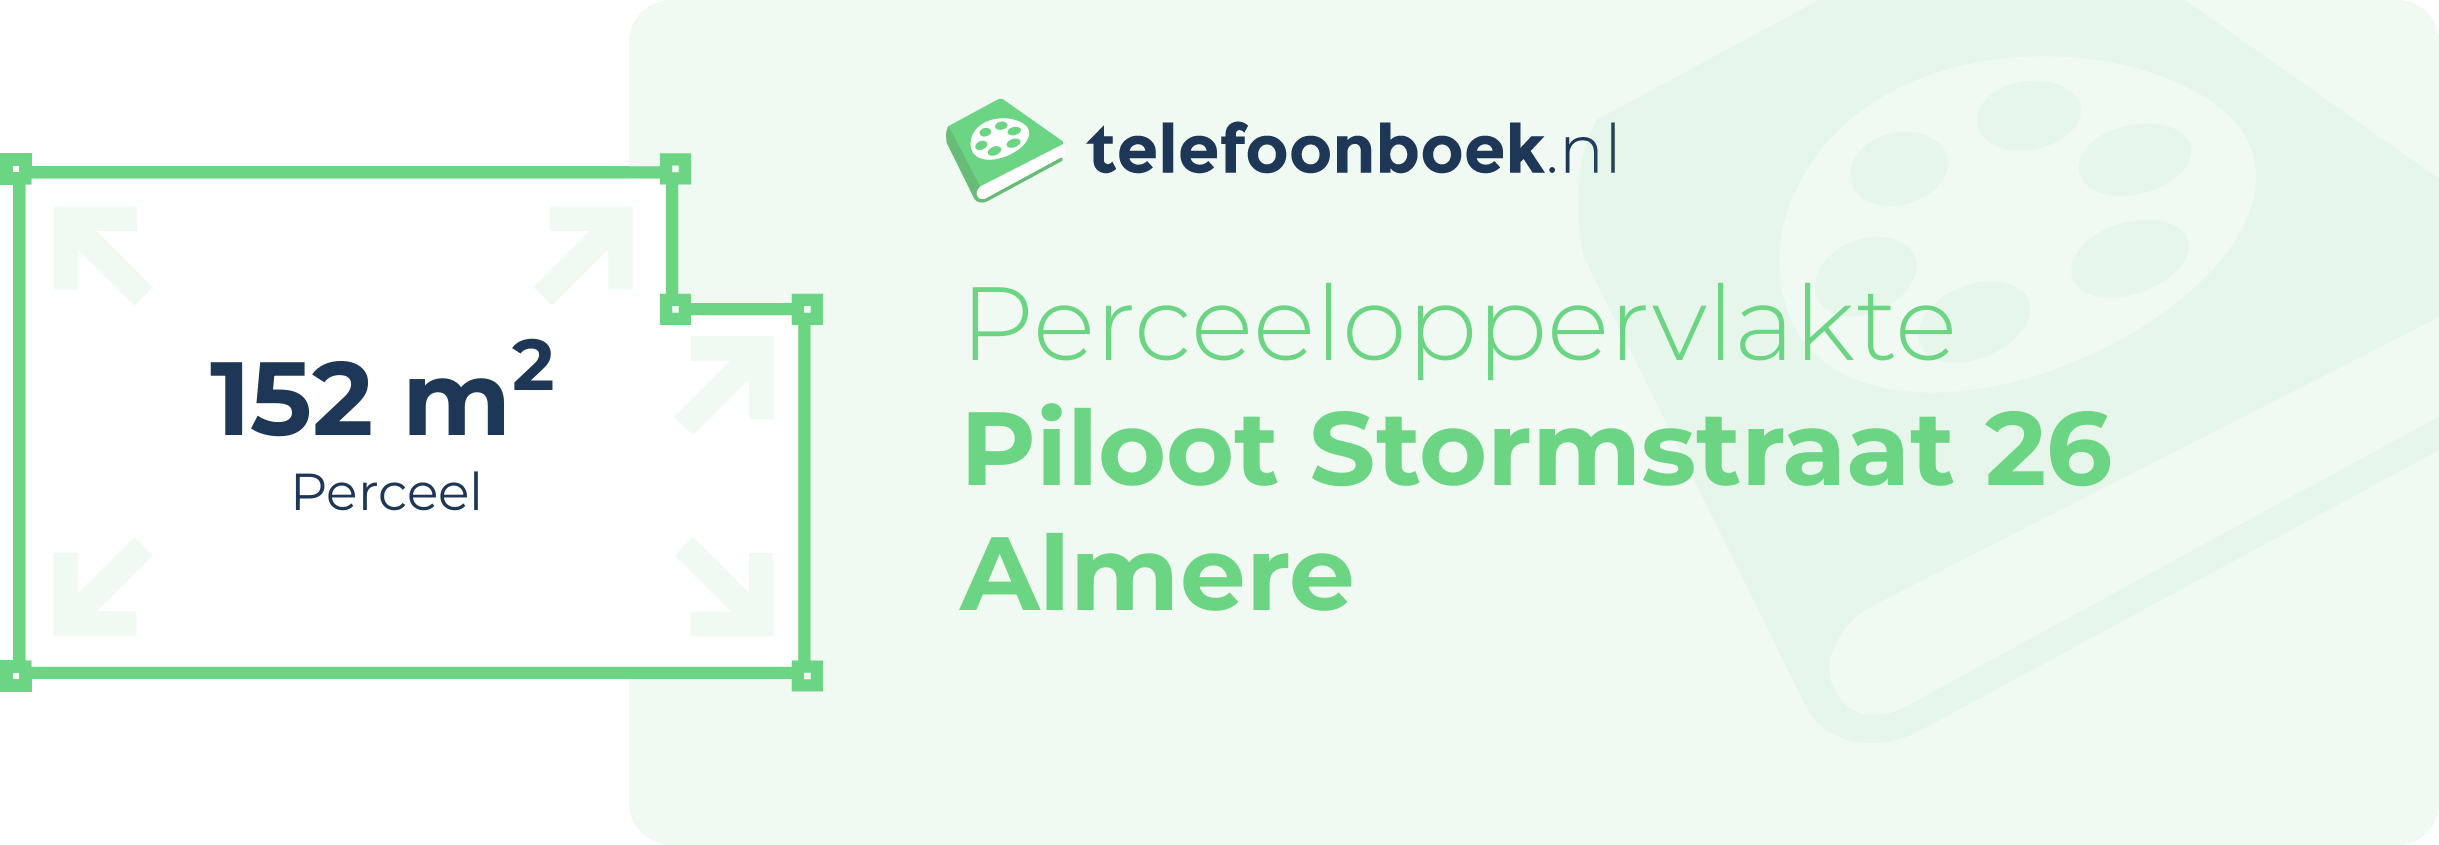 Perceeloppervlakte Piloot Stormstraat 26 Almere